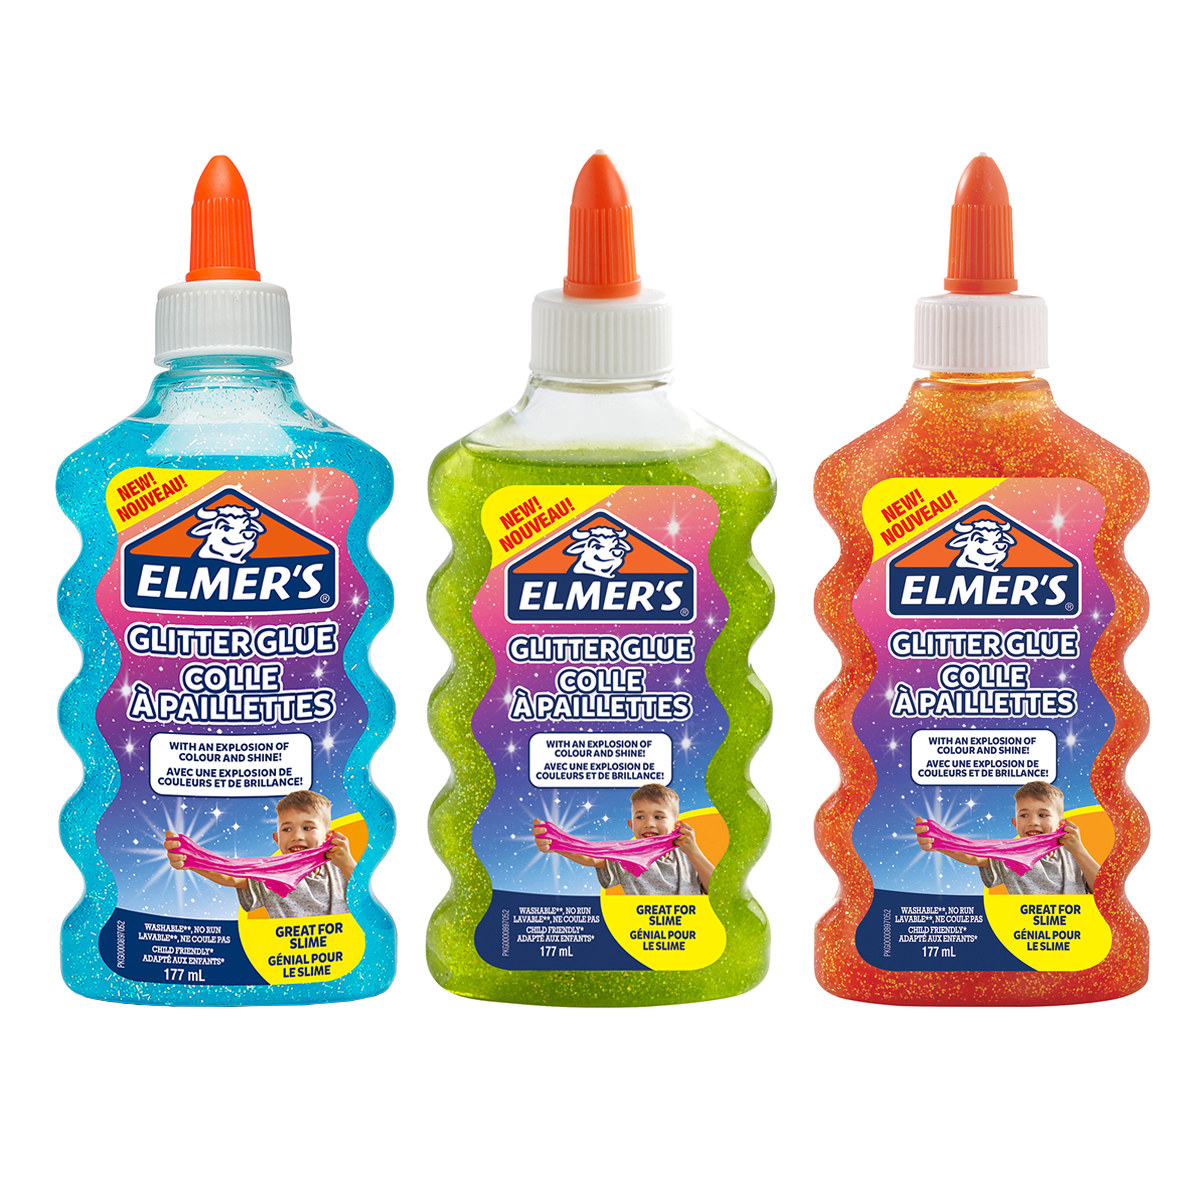 Elmers Clear Glue 147ml - Create Art Studio